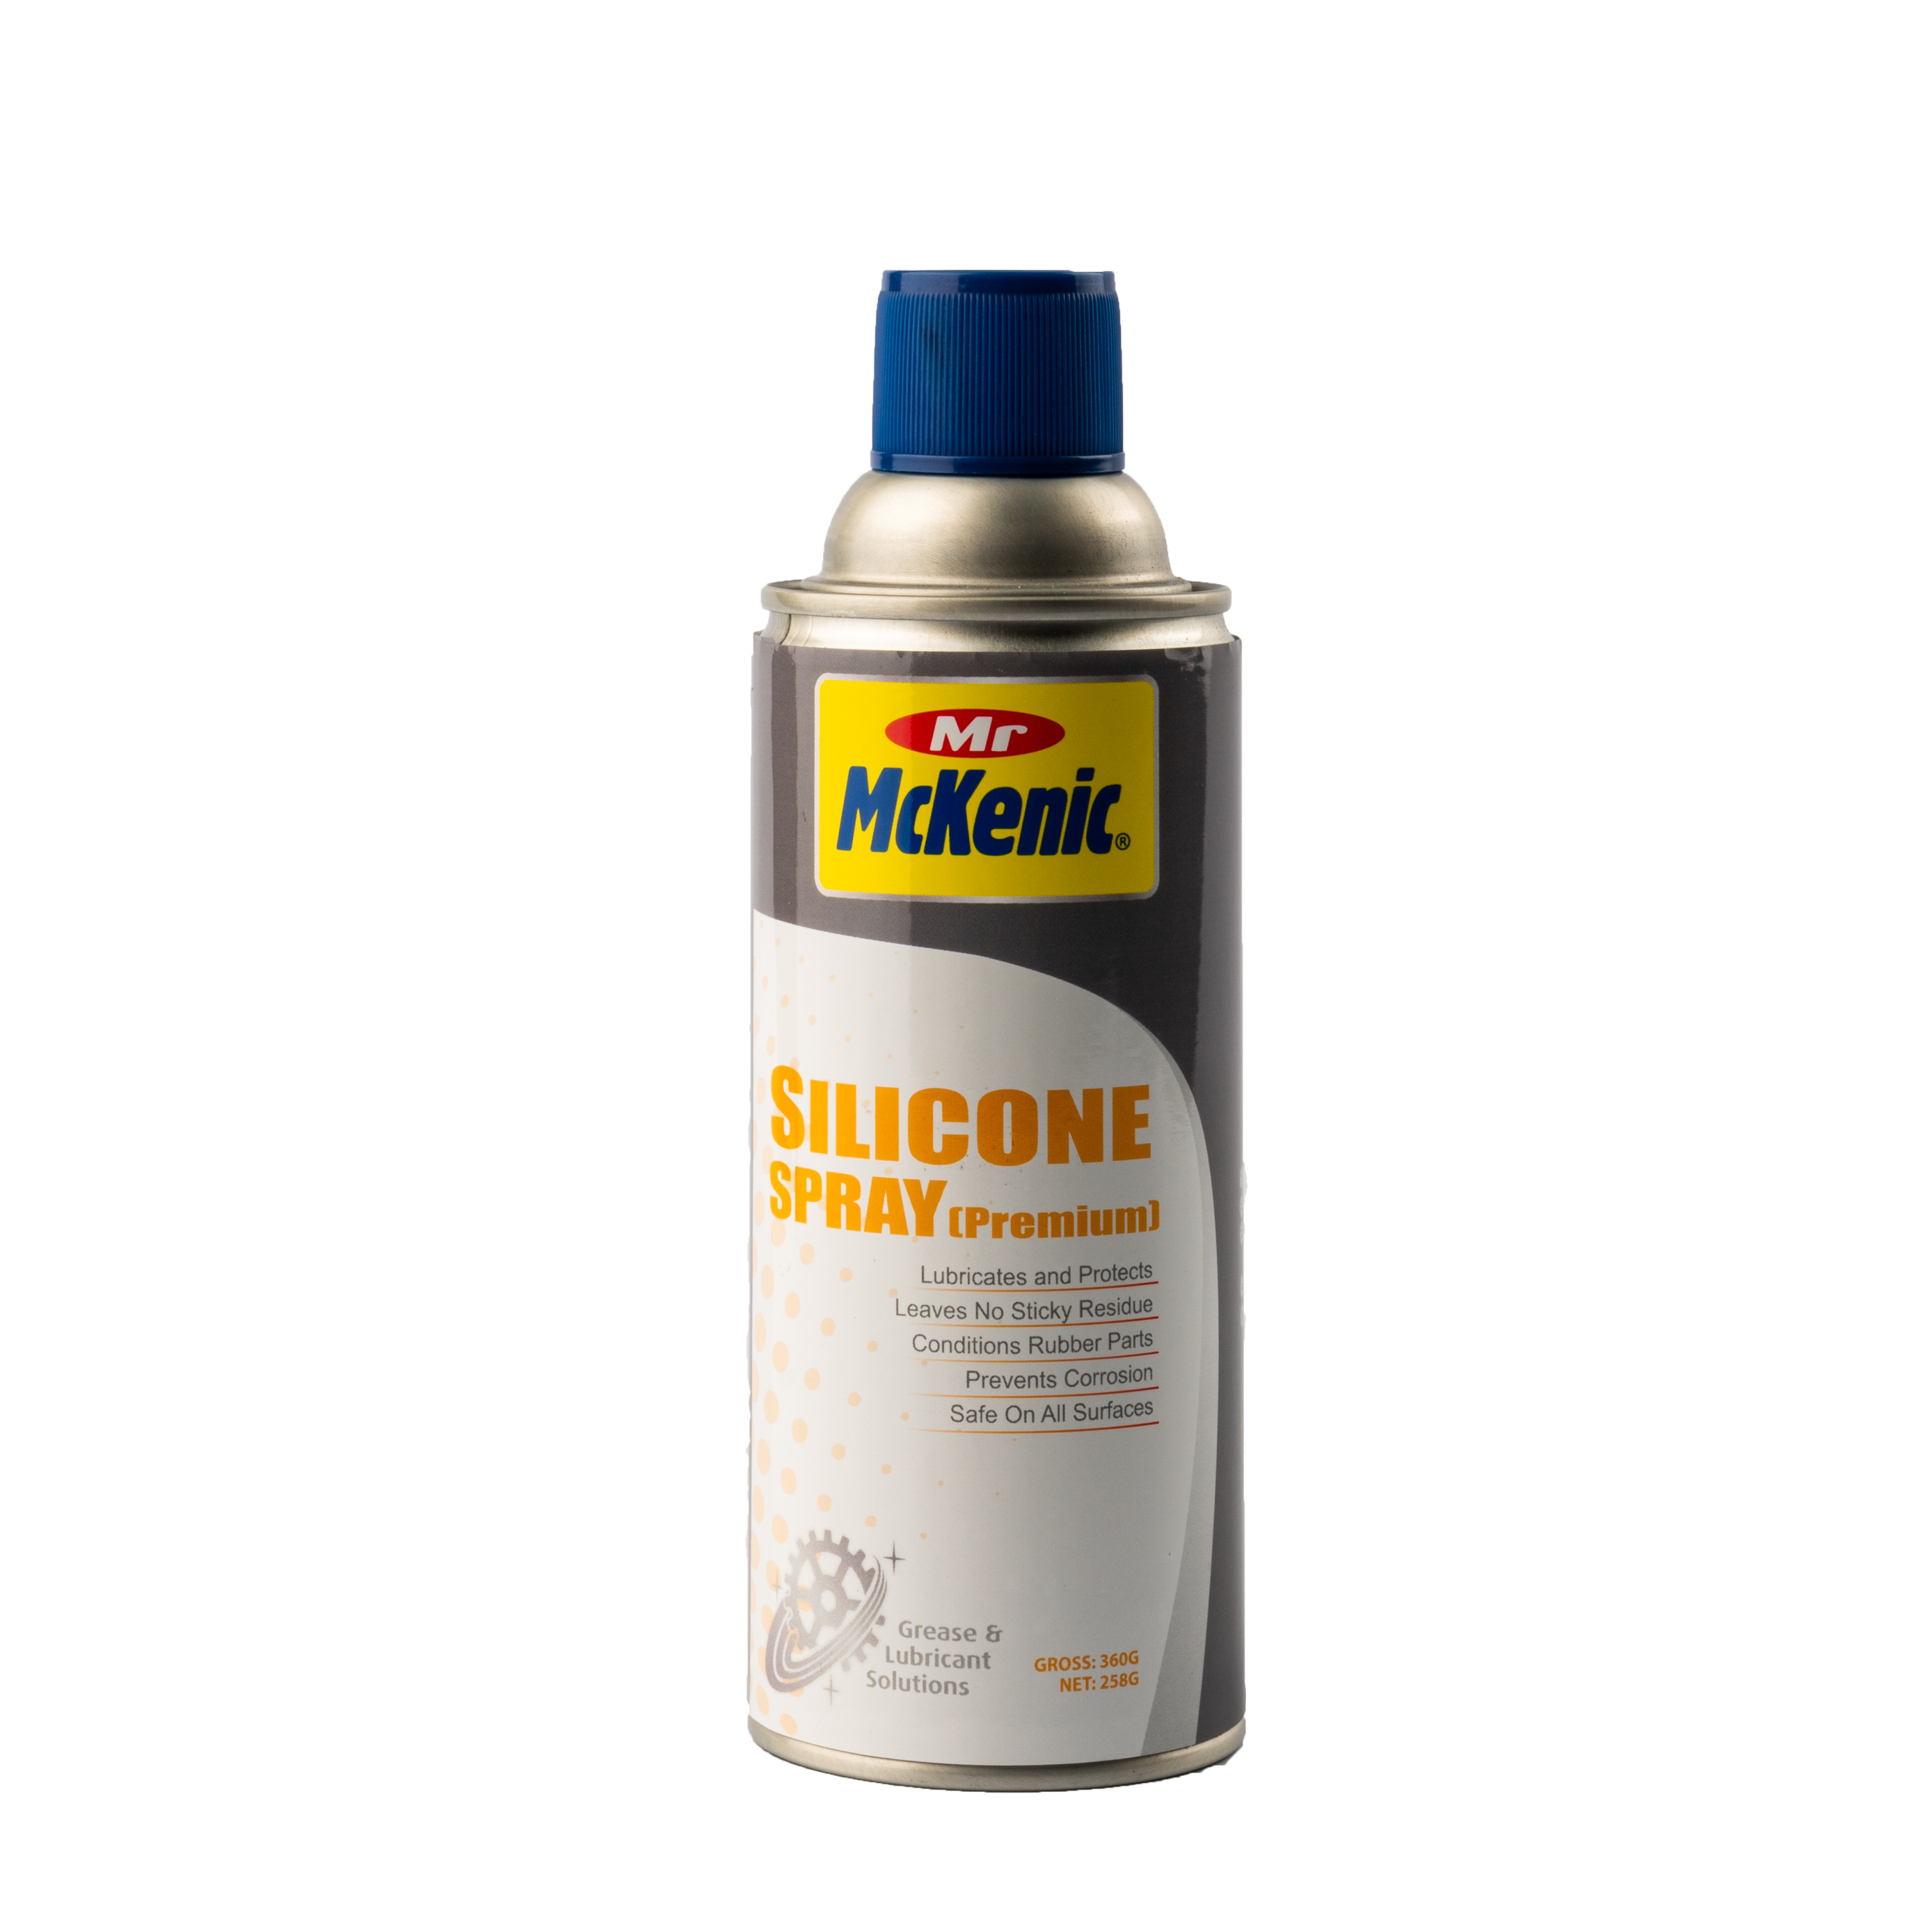 Mr McKenic Silicone Spray (Premium) 400ml - Selffix Singapore